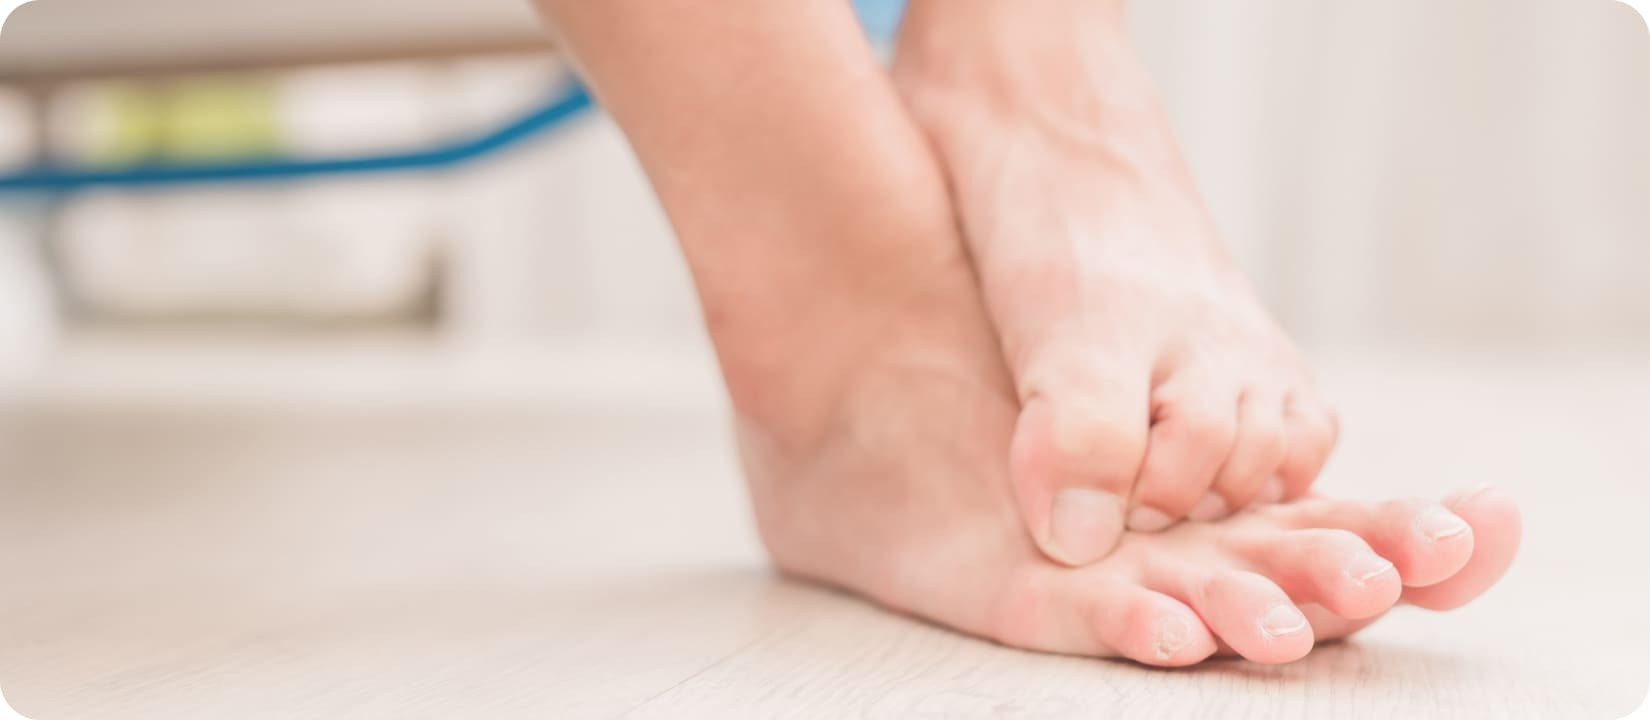 Грибок на ногтях – причины, профилактика, лечение народными средствами в домашних условиях